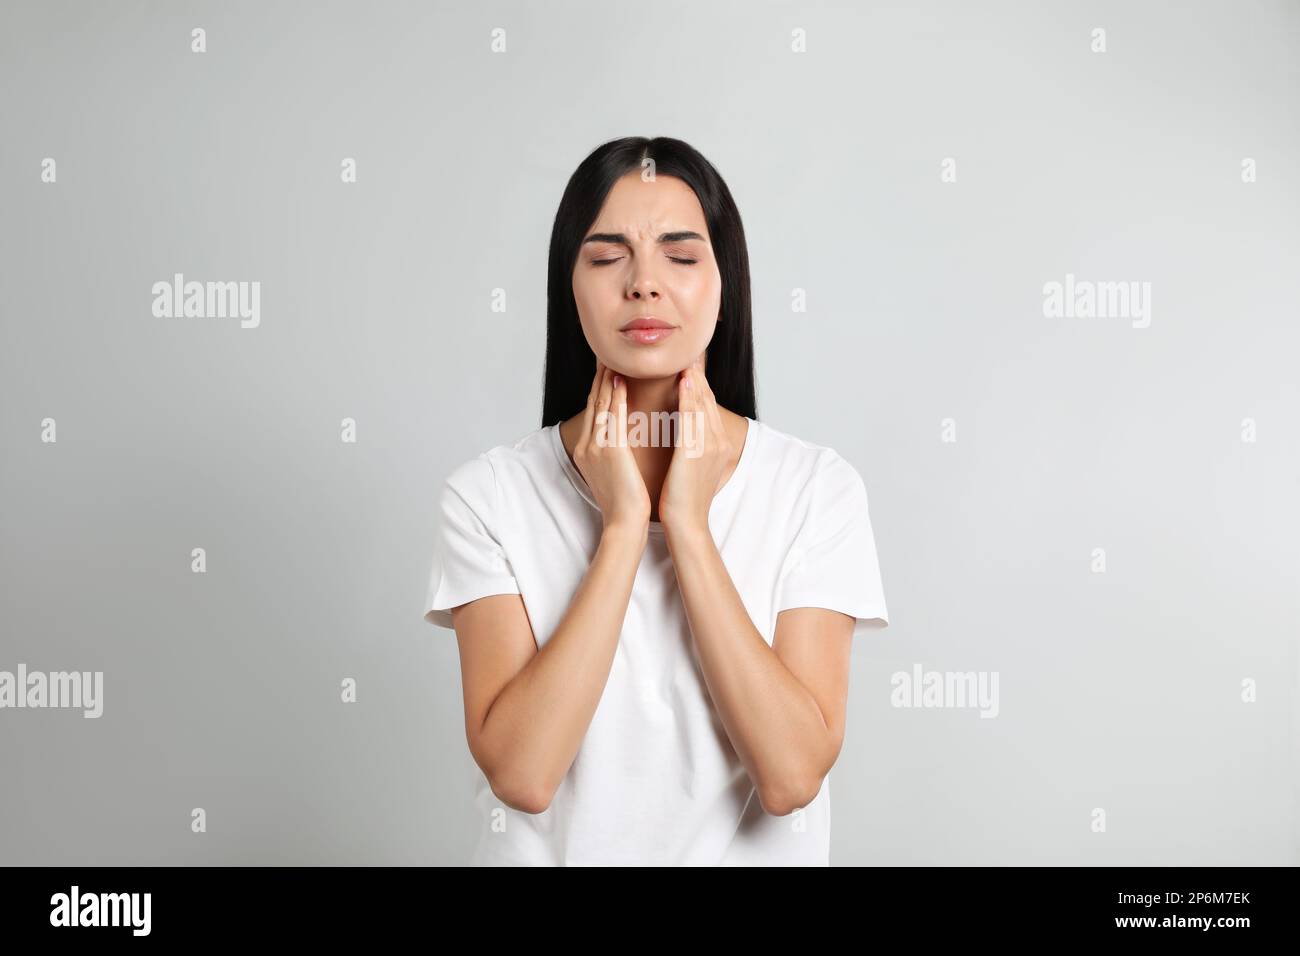 Junge Frau, die Schilddrüsen-Selbstuntersuchung vor hellem Hintergrund durchführt Stockfoto